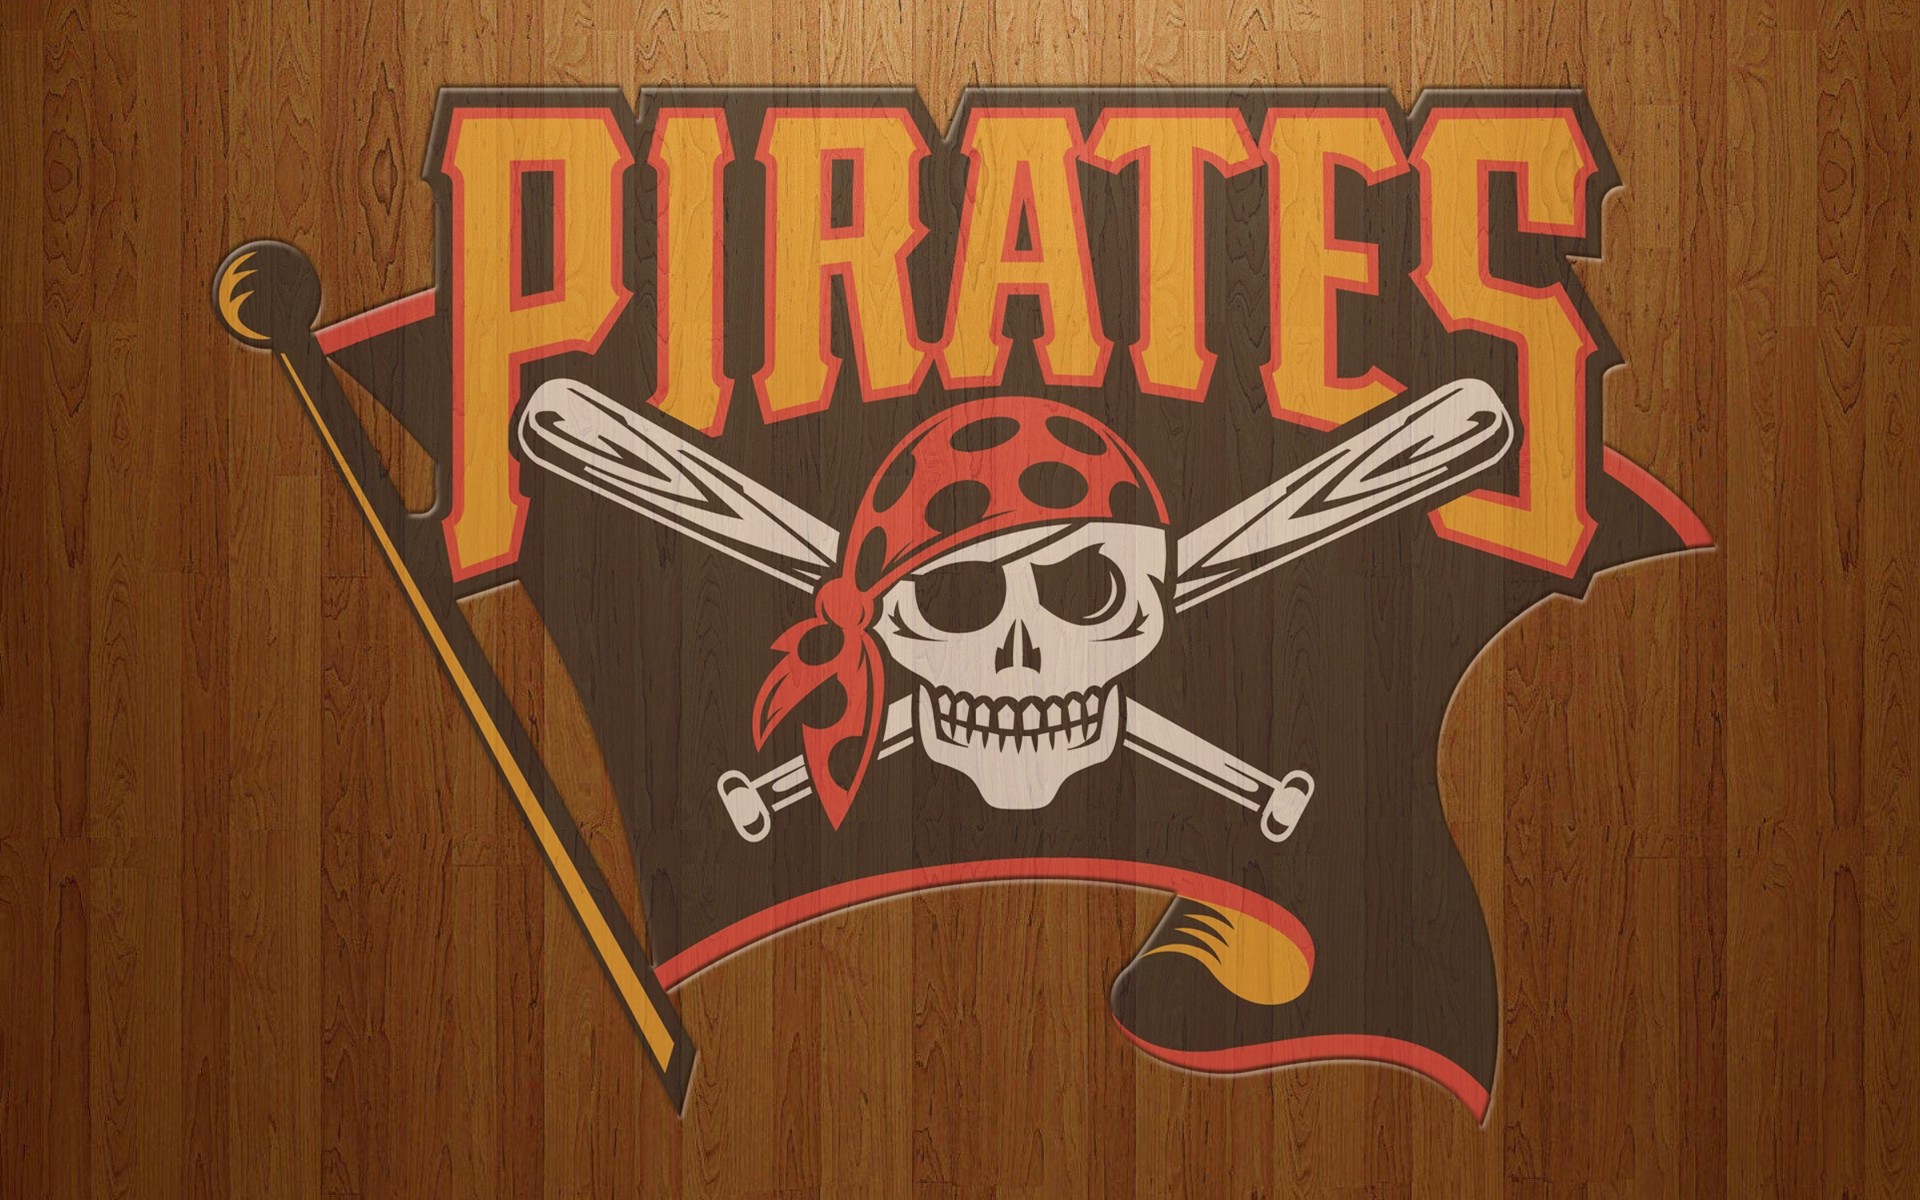 45+] Pittsburgh Pirates Wallpaper - WallpaperSafari